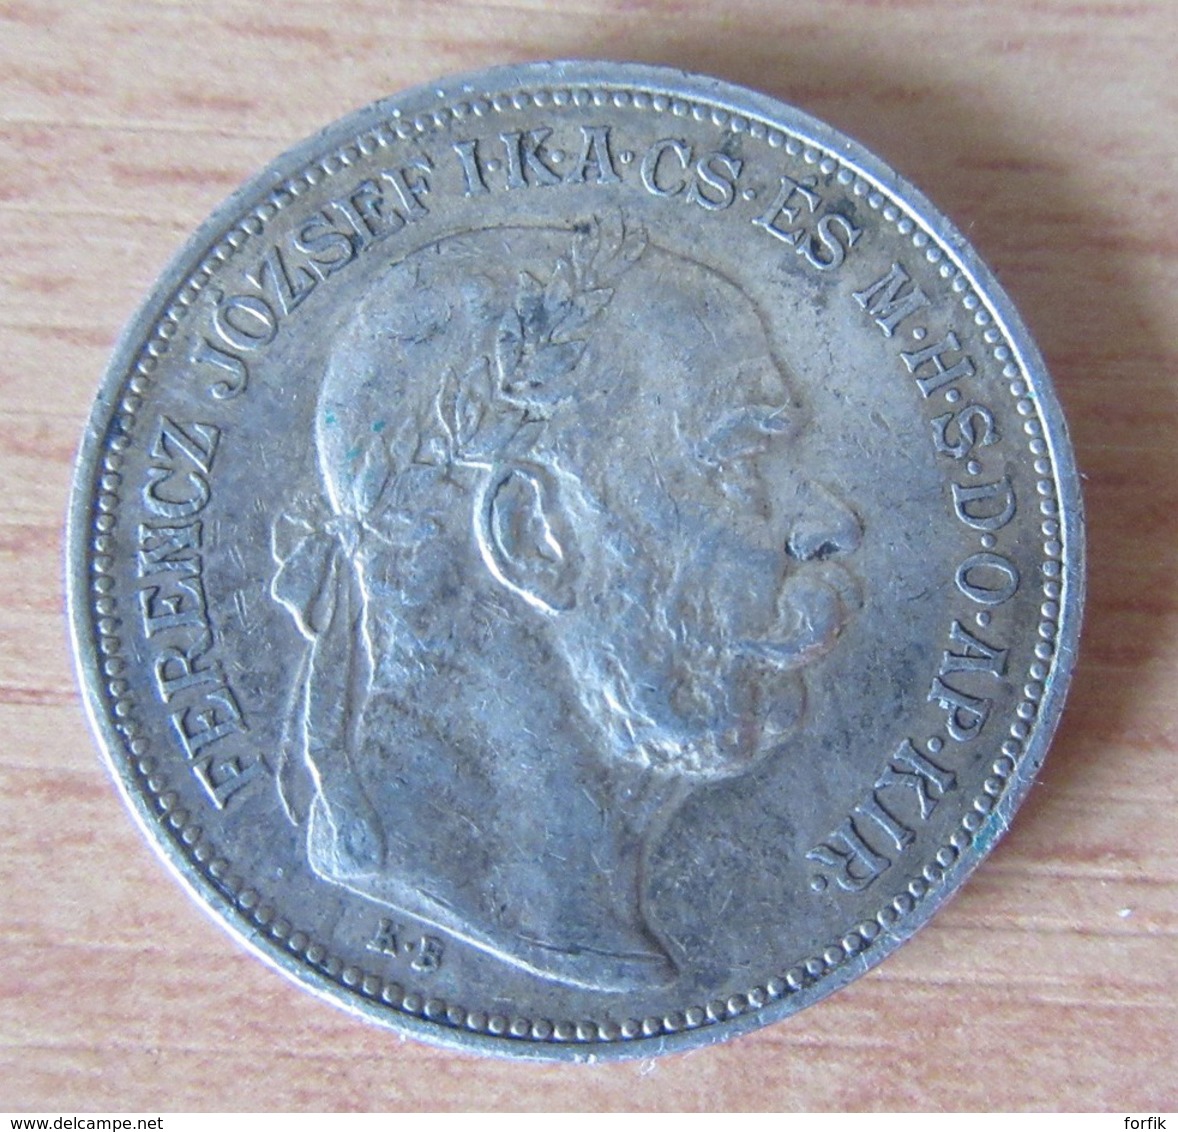 Autriche + Hongrie - Lot de 7 monnaies en argent dont 5 Coronae 1909 et 50 Shilling 1971 - Achat immédiat